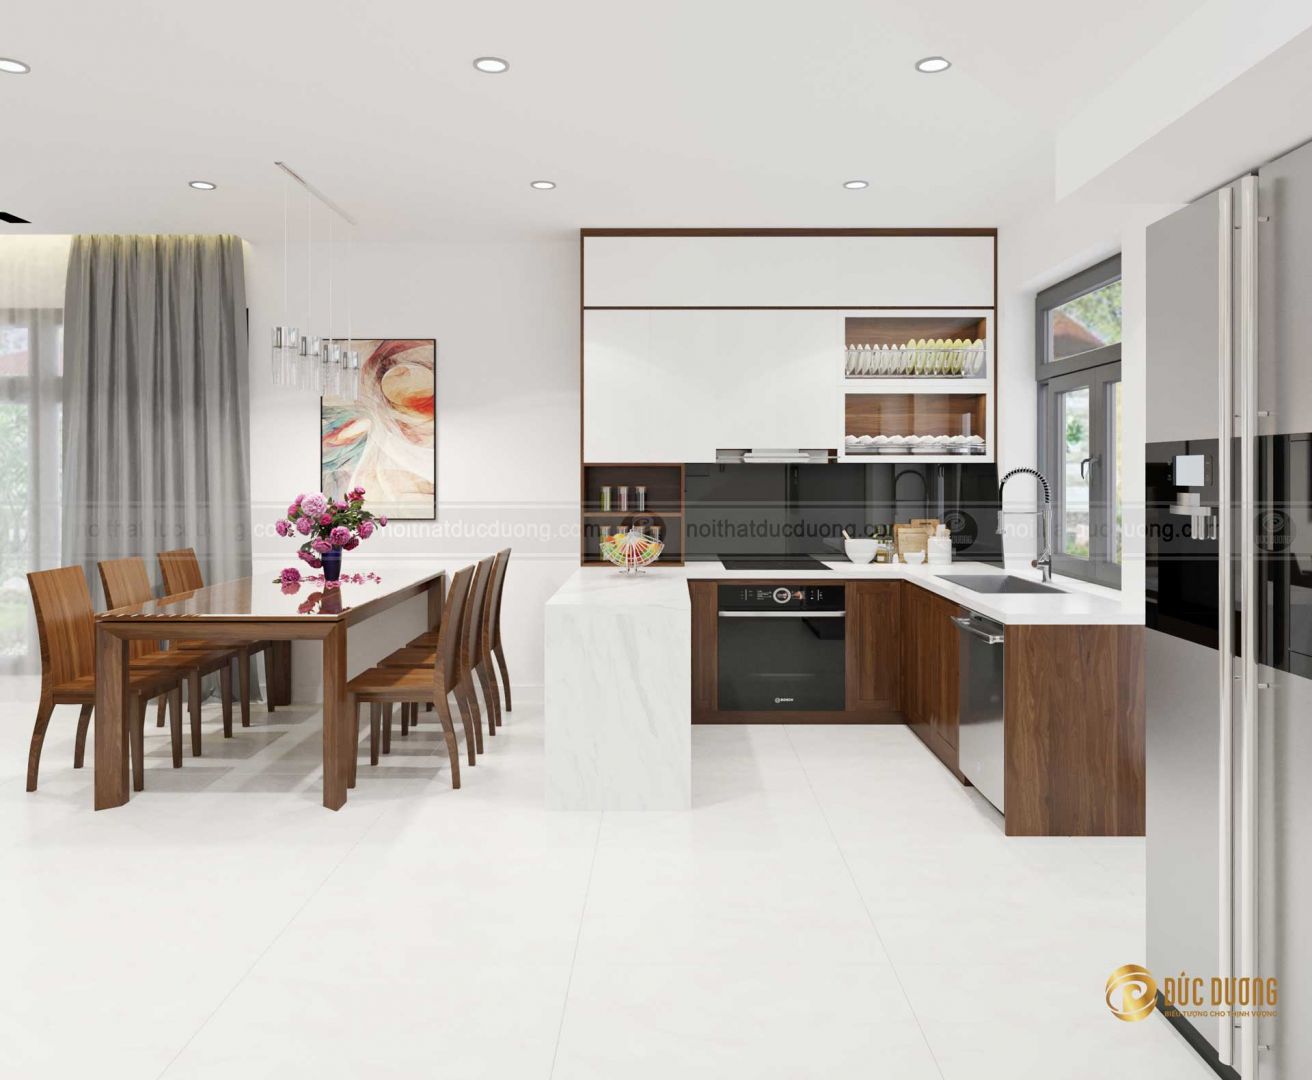 Thiết kế không gian nội thất cho mẫu phòng bếp nhỏ hiện đại